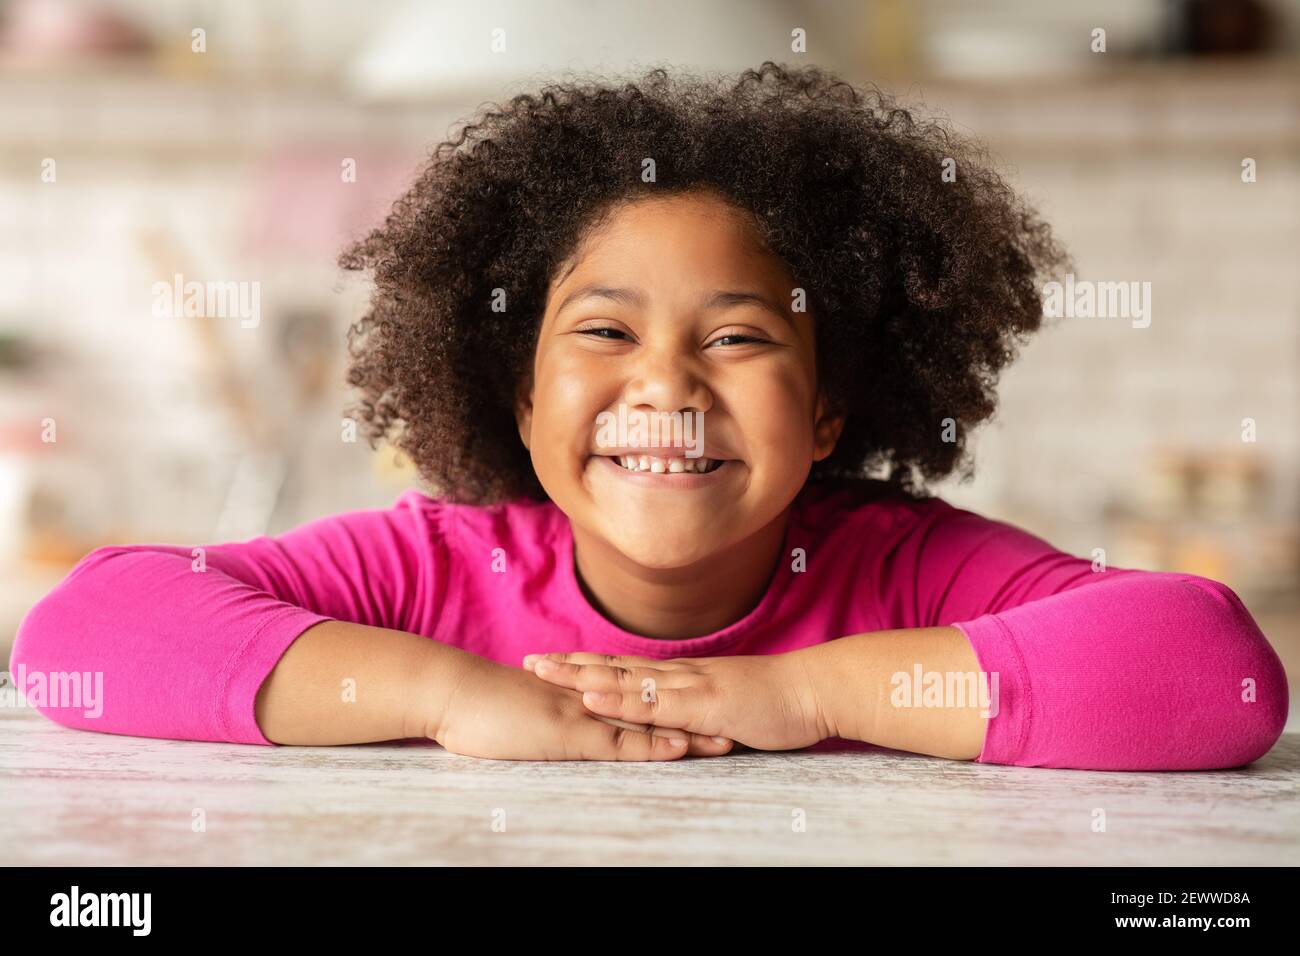 Enfant heureux. Portrait de petite fille noire joyeuse assise à la table Banque D'Images